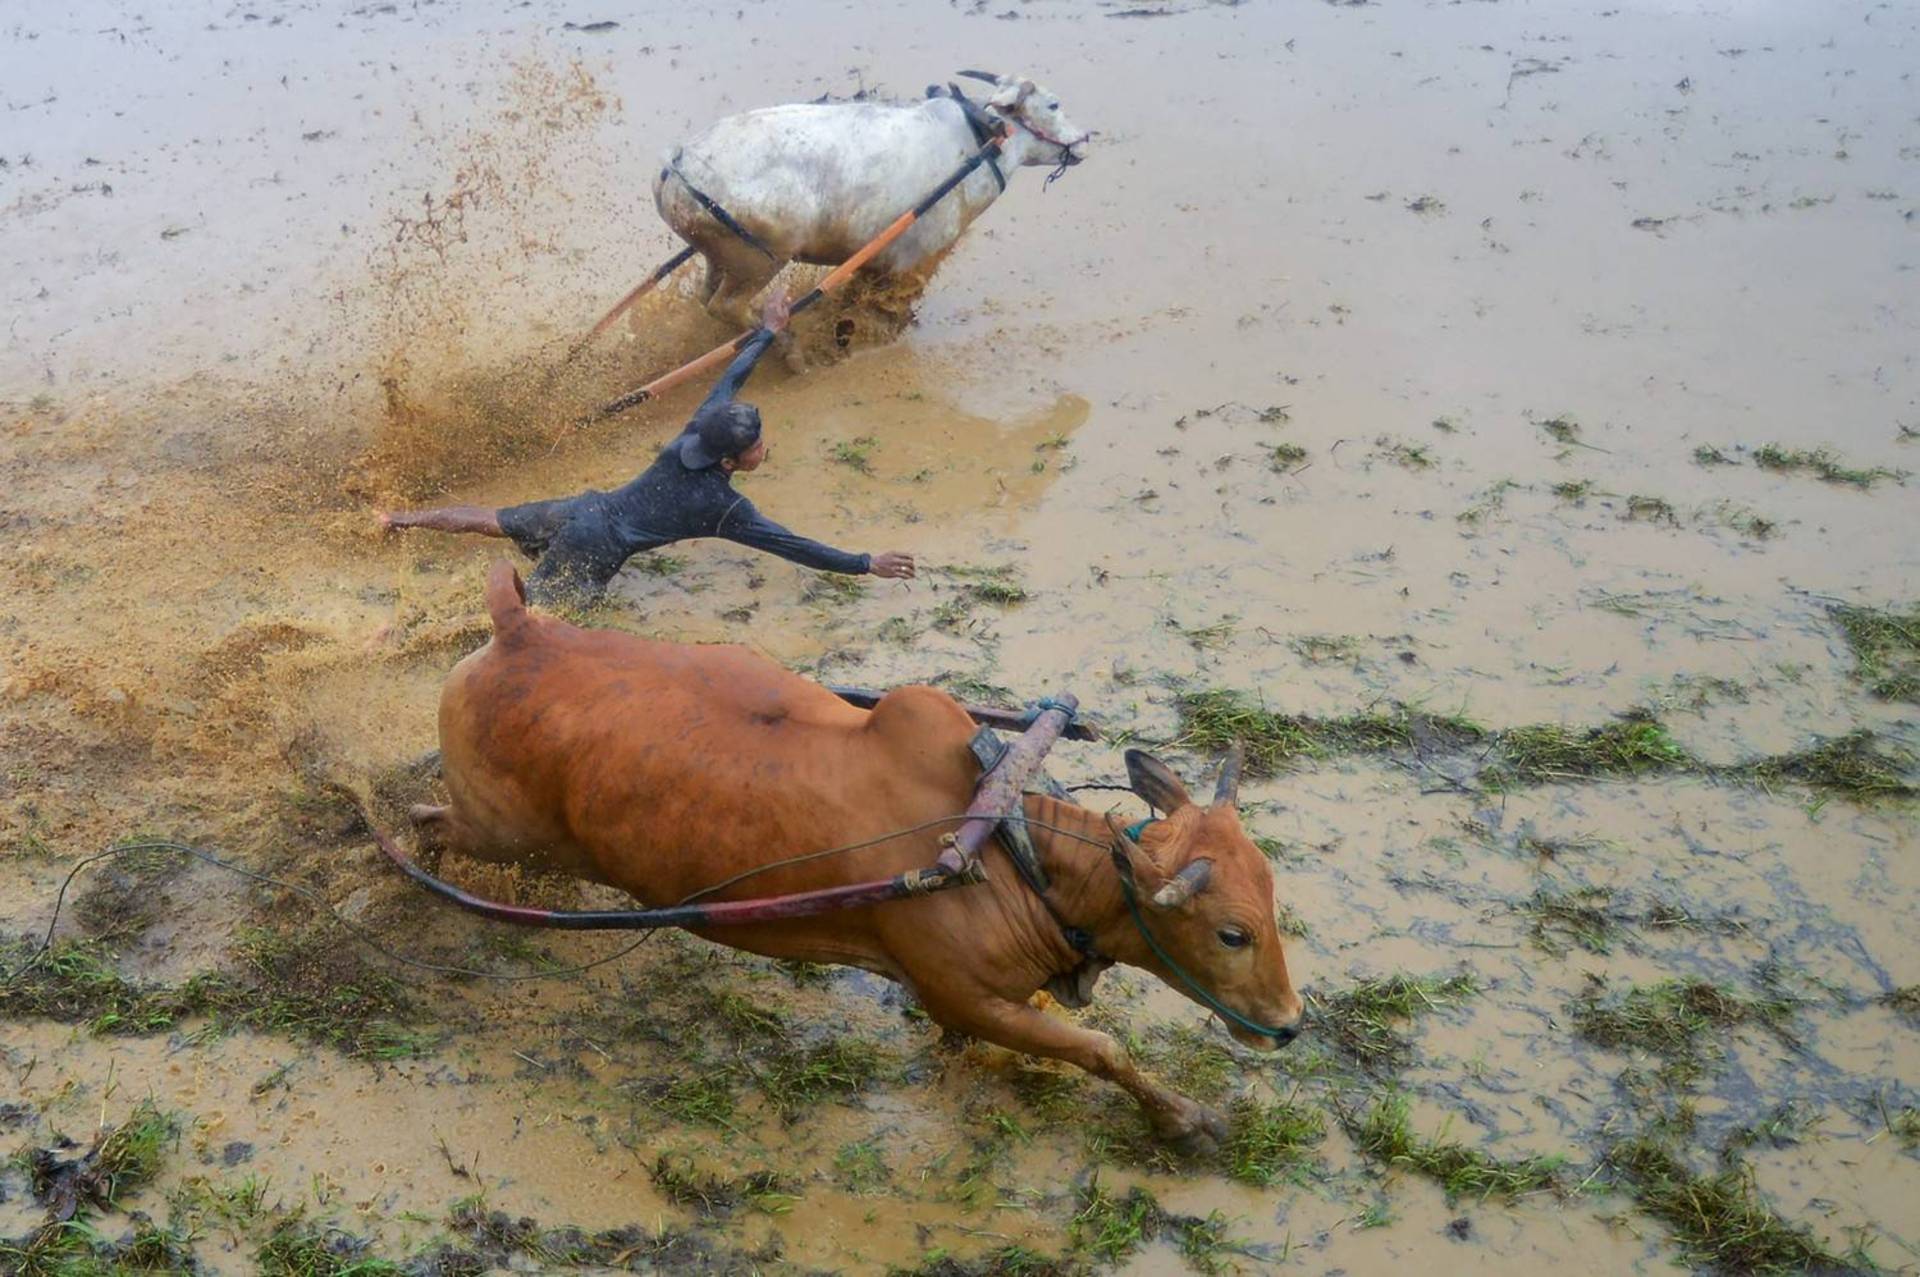 Lama, perigo e lesões: a corrida de touros que se tornou uma atração  turística internacional - Fotos - R7 Hora 7